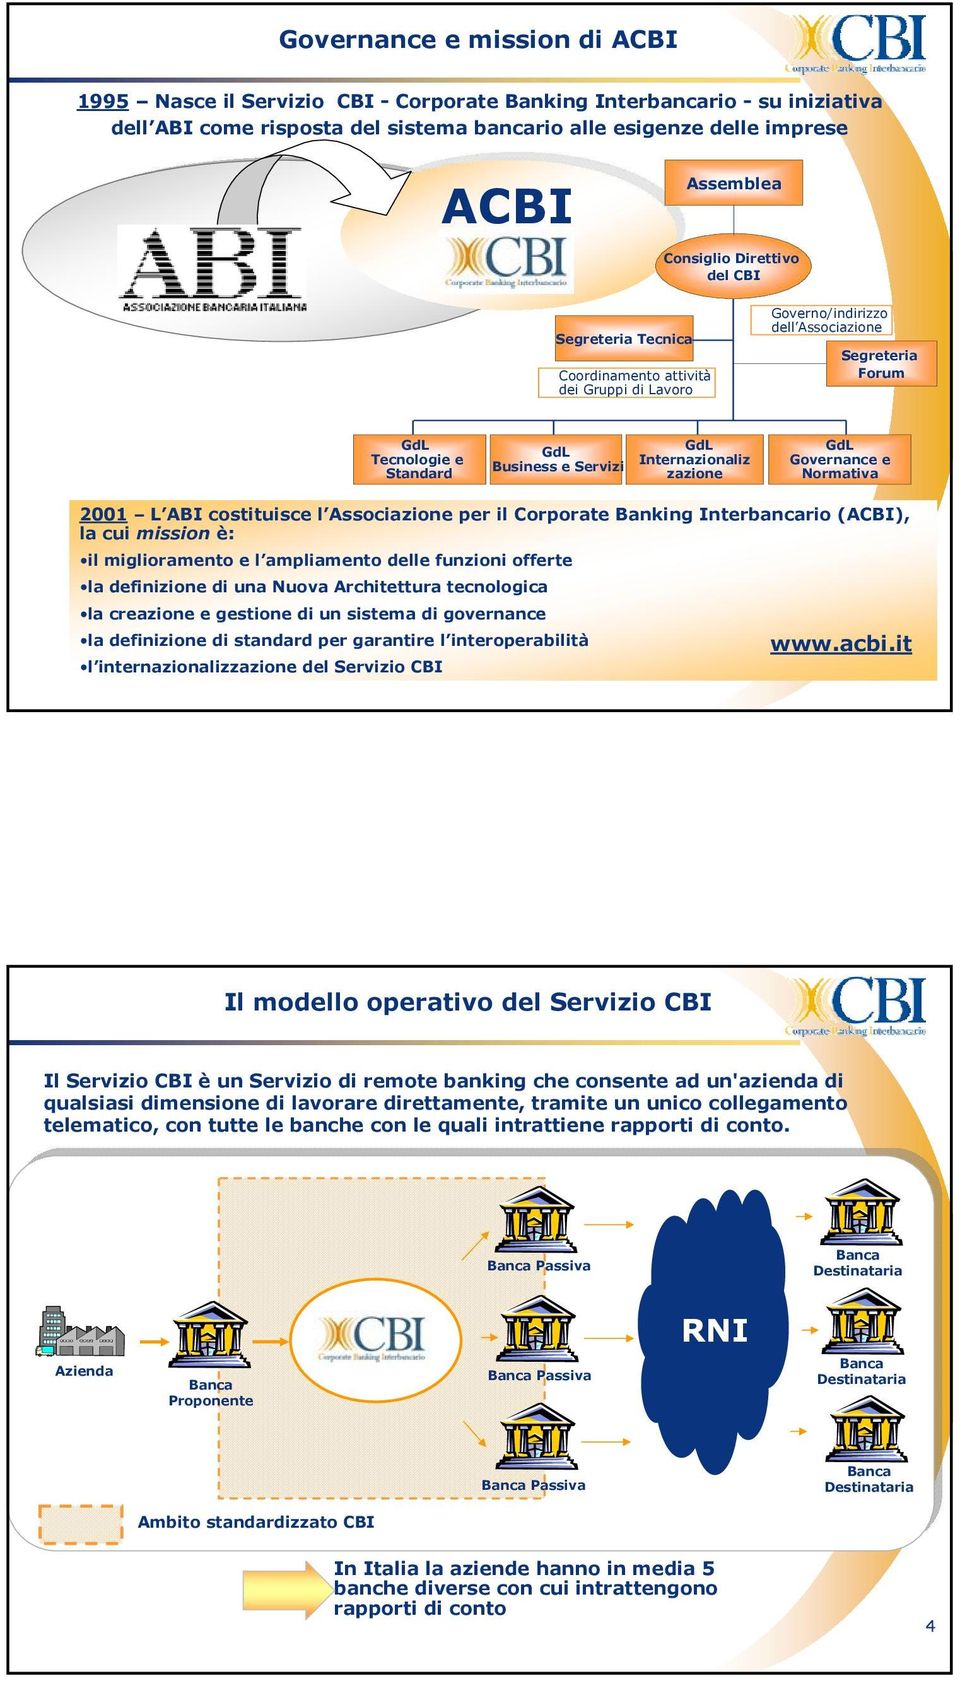 Internazionaliz zazione GdL Governance e Normativa 2001 L ABI costituisce l Associazione per il Corporate Banking Interbancario (ACBI), la cui mission è: il miglioramento e l ampliamento delle